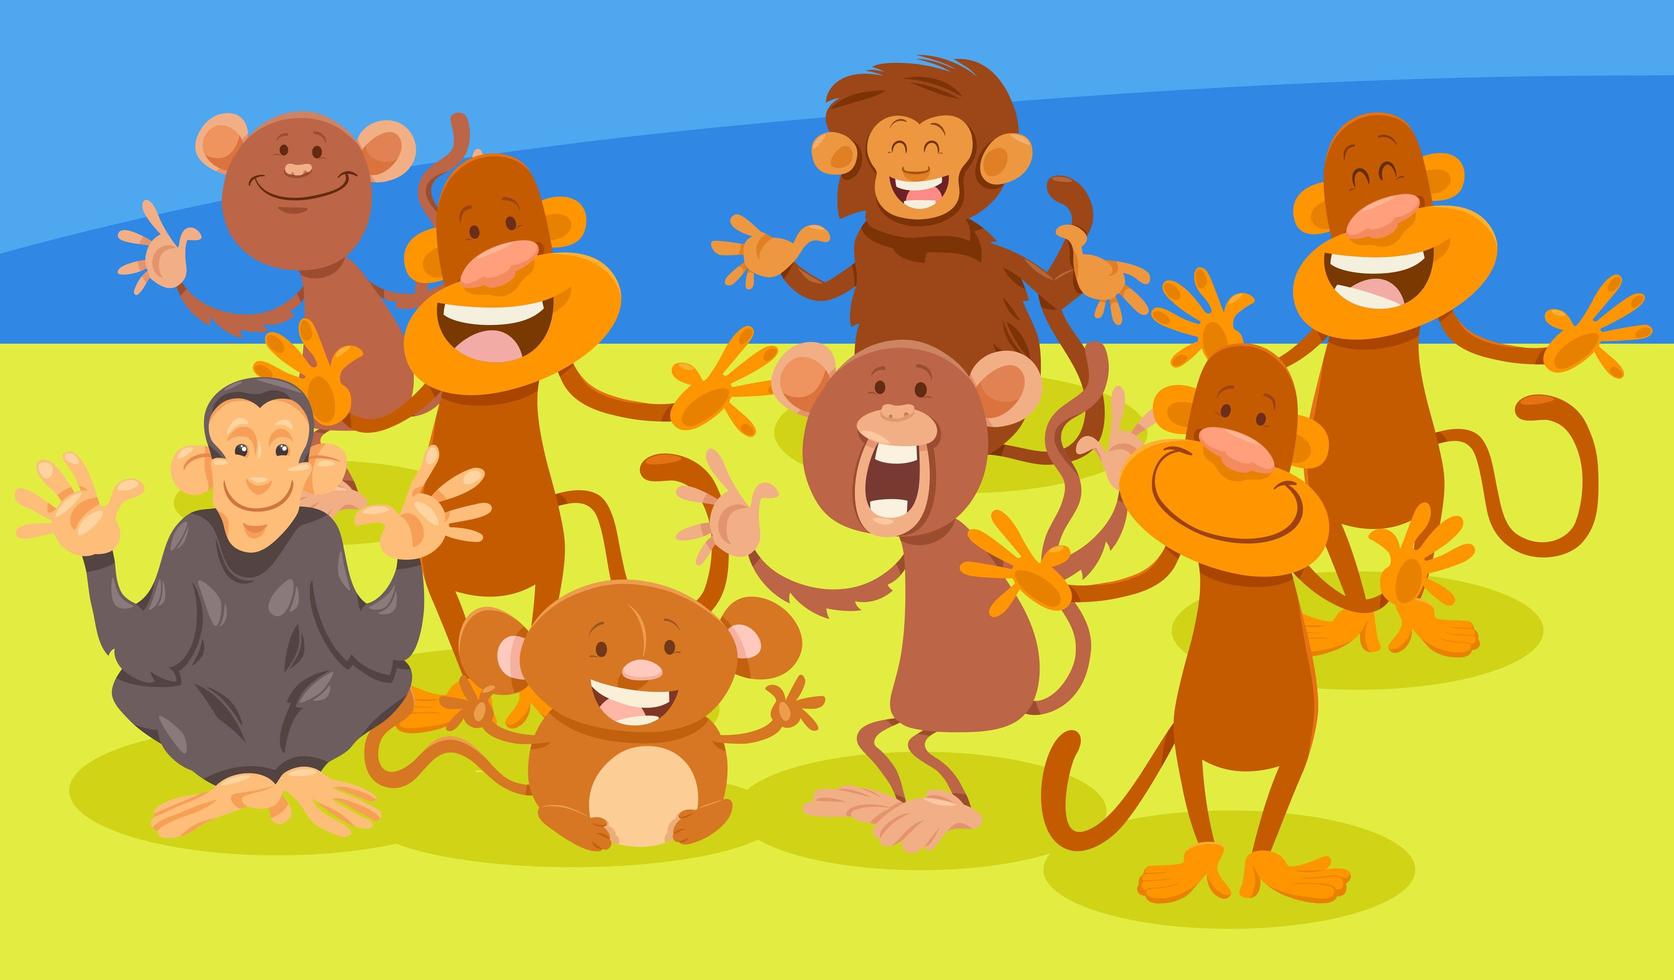 groupe de personnages animaux singes de dessin animé vecteur